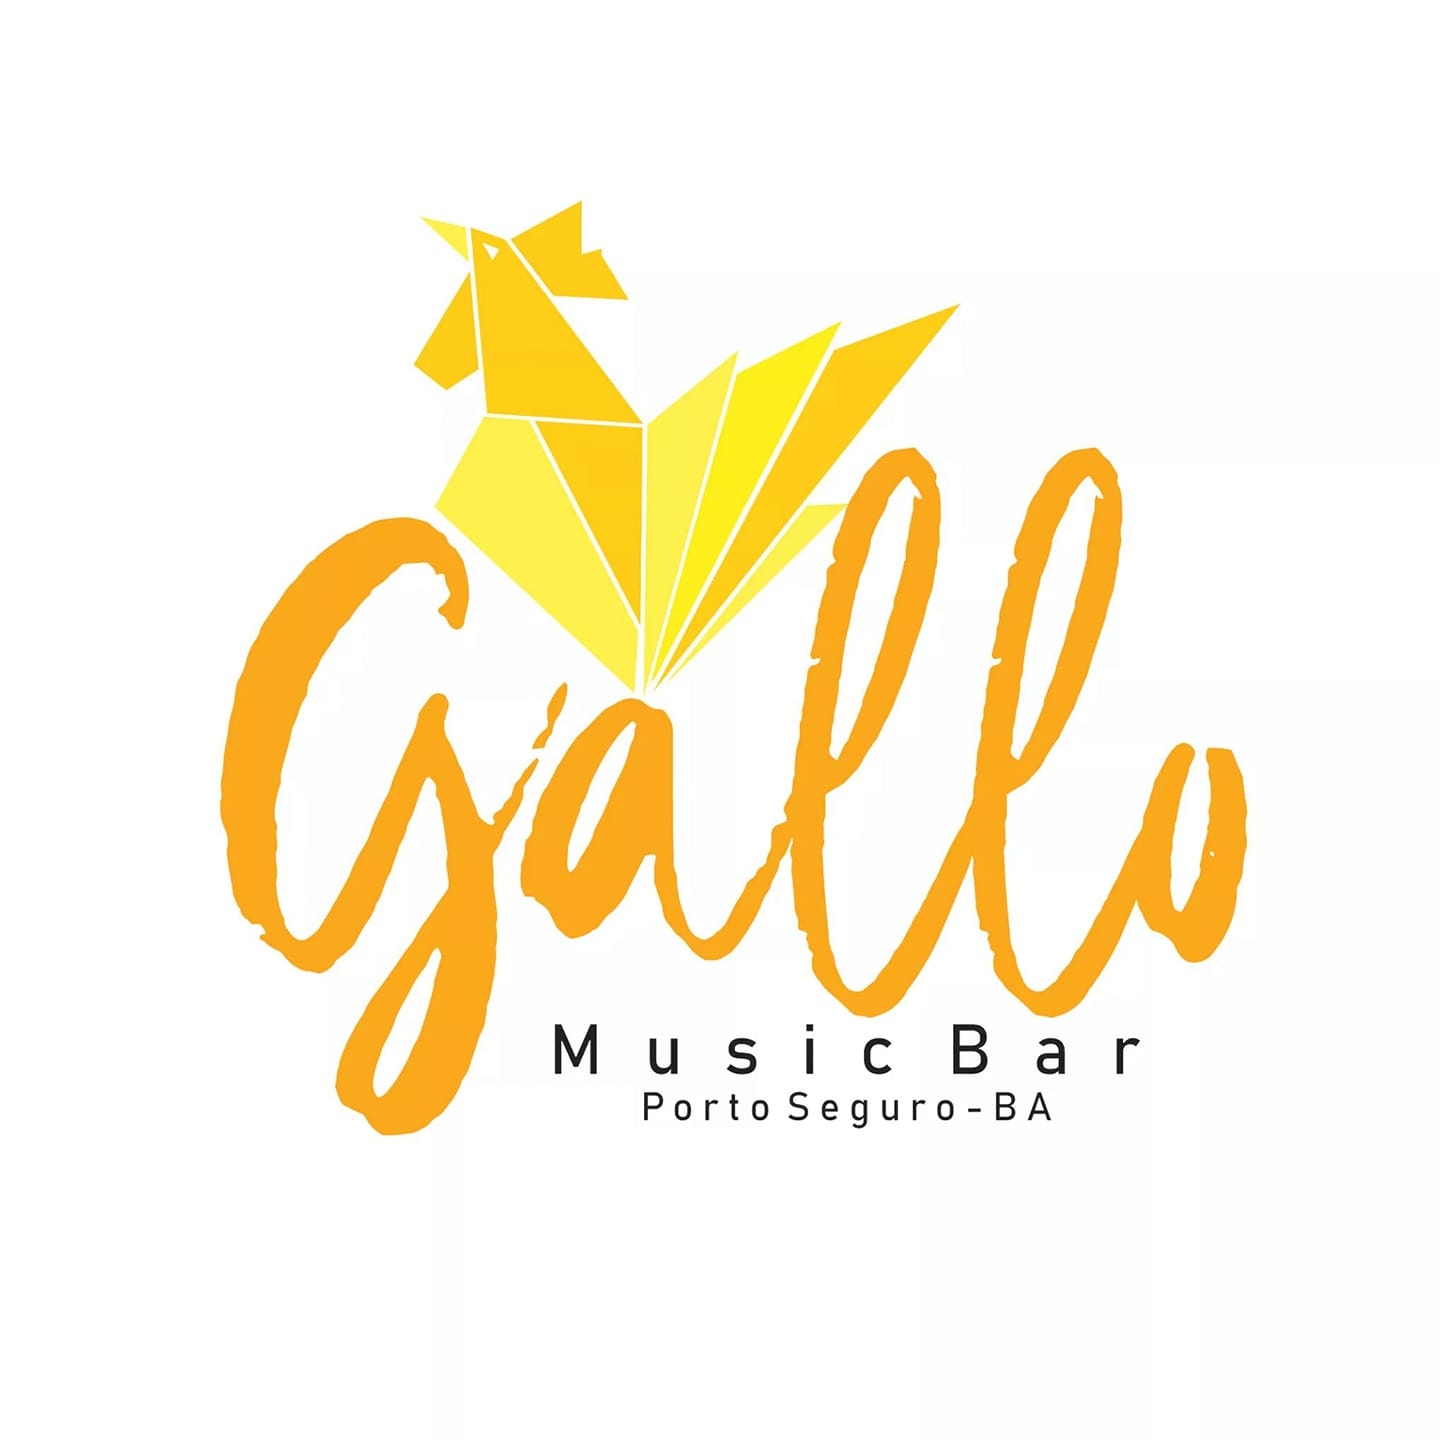 Cartaz  - Gallo Music Bar - Rua 2 de julho, 20B - Casa da Lenha, Quinta-feira 3 de Outubro de 2019